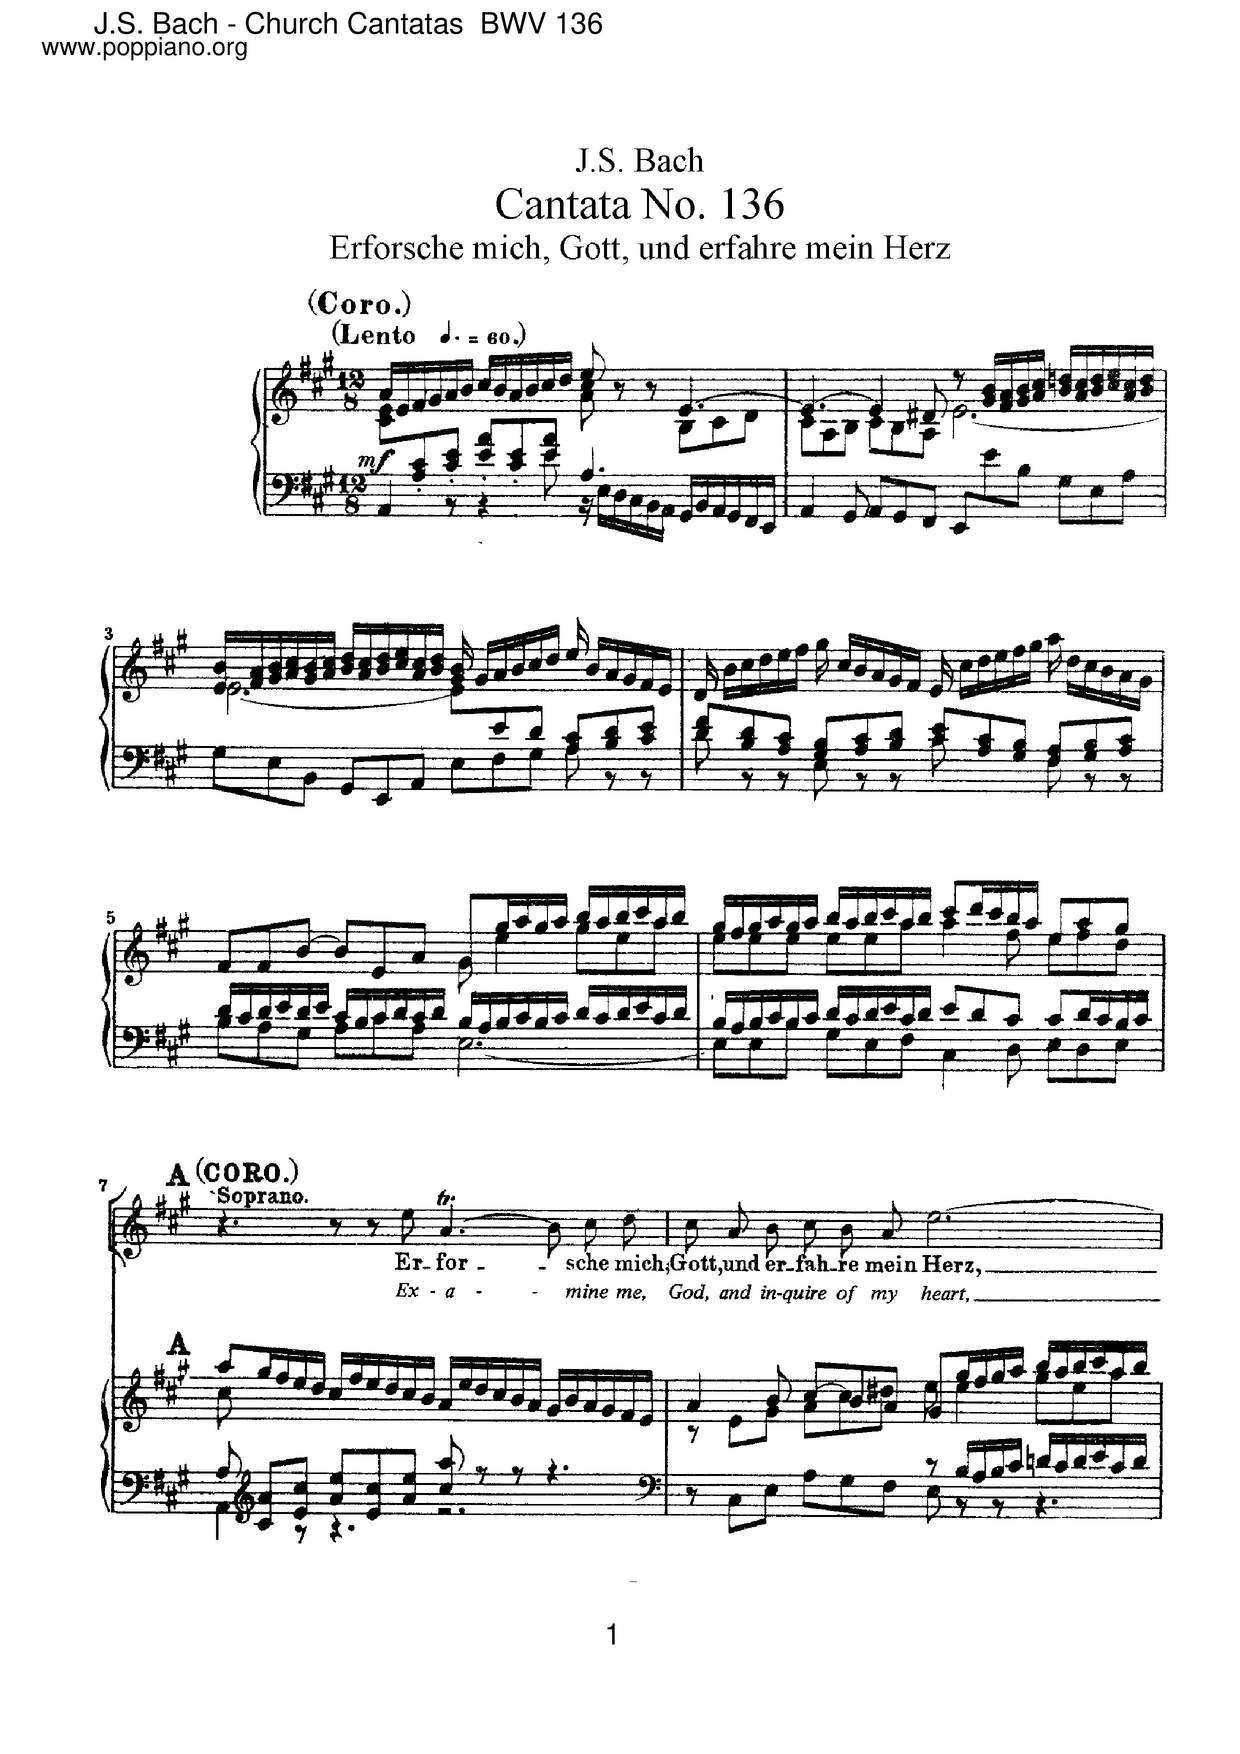 Erforsche Mich, Gott, Und Erfahre Mein Herz, BWV 136ピアノ譜